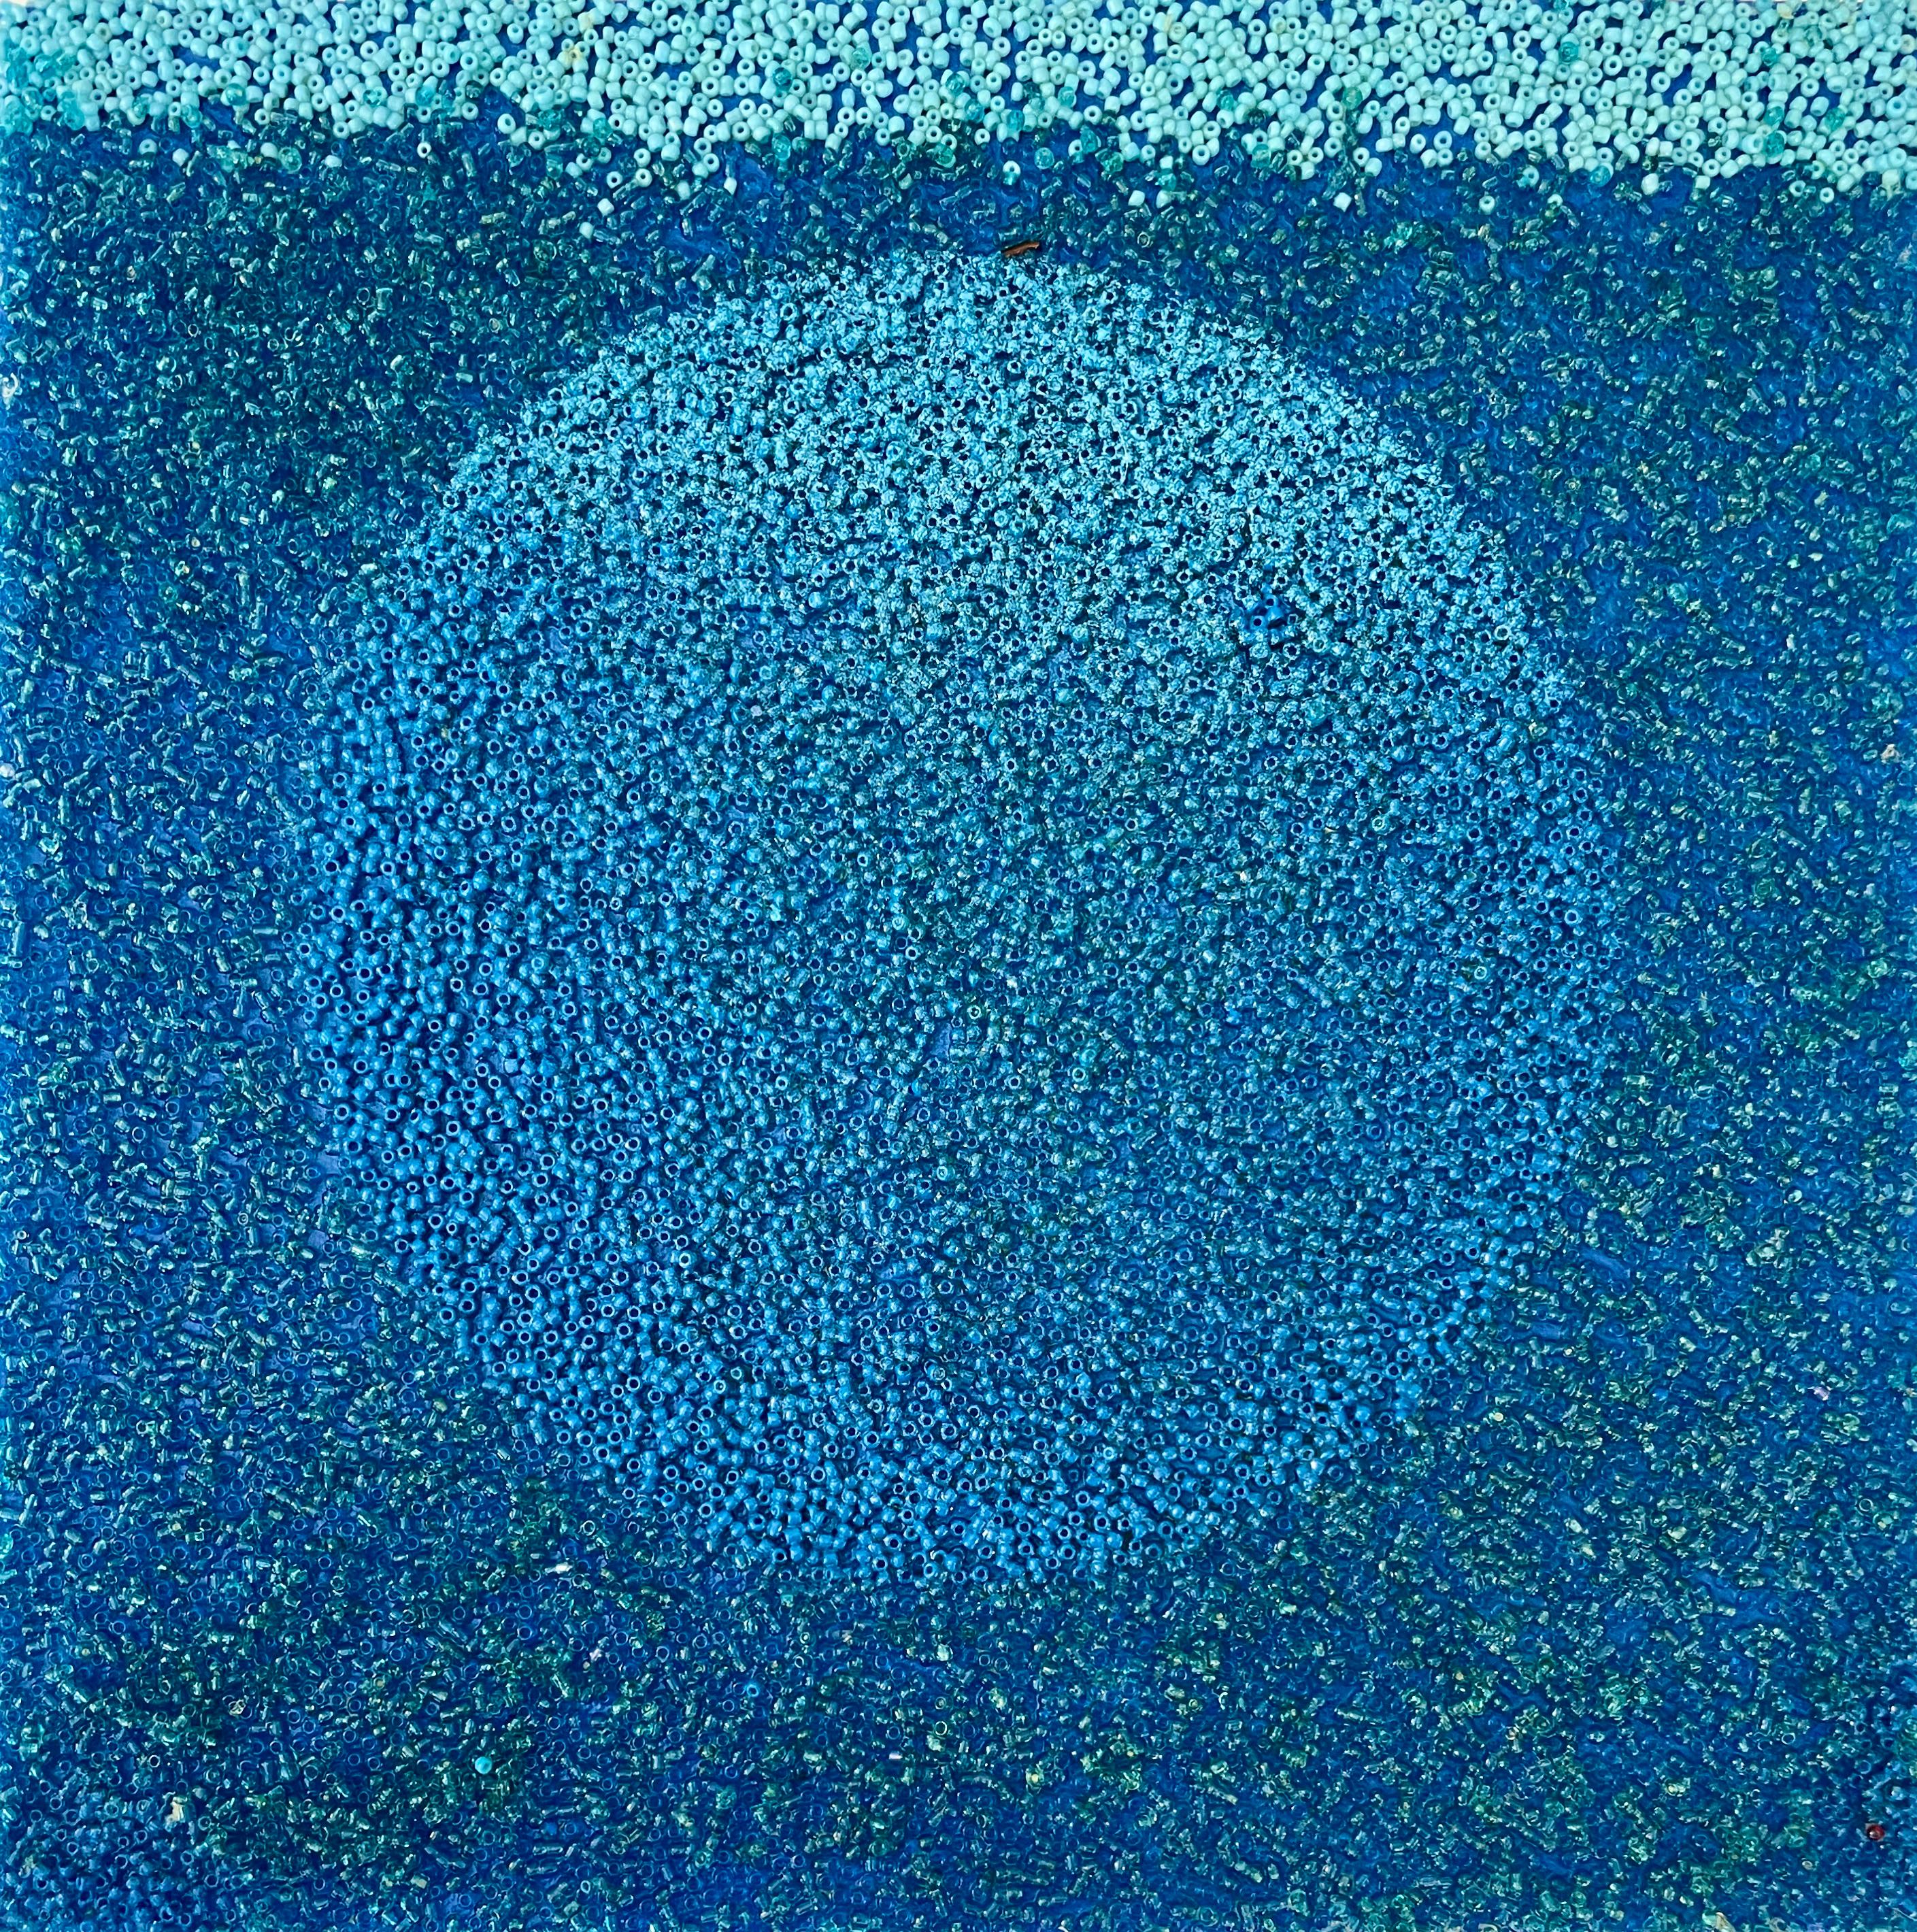 Tantra in Blau #12: minimalistische abstrakte Skulptur / Gemälde mit niedrigen Kreisen